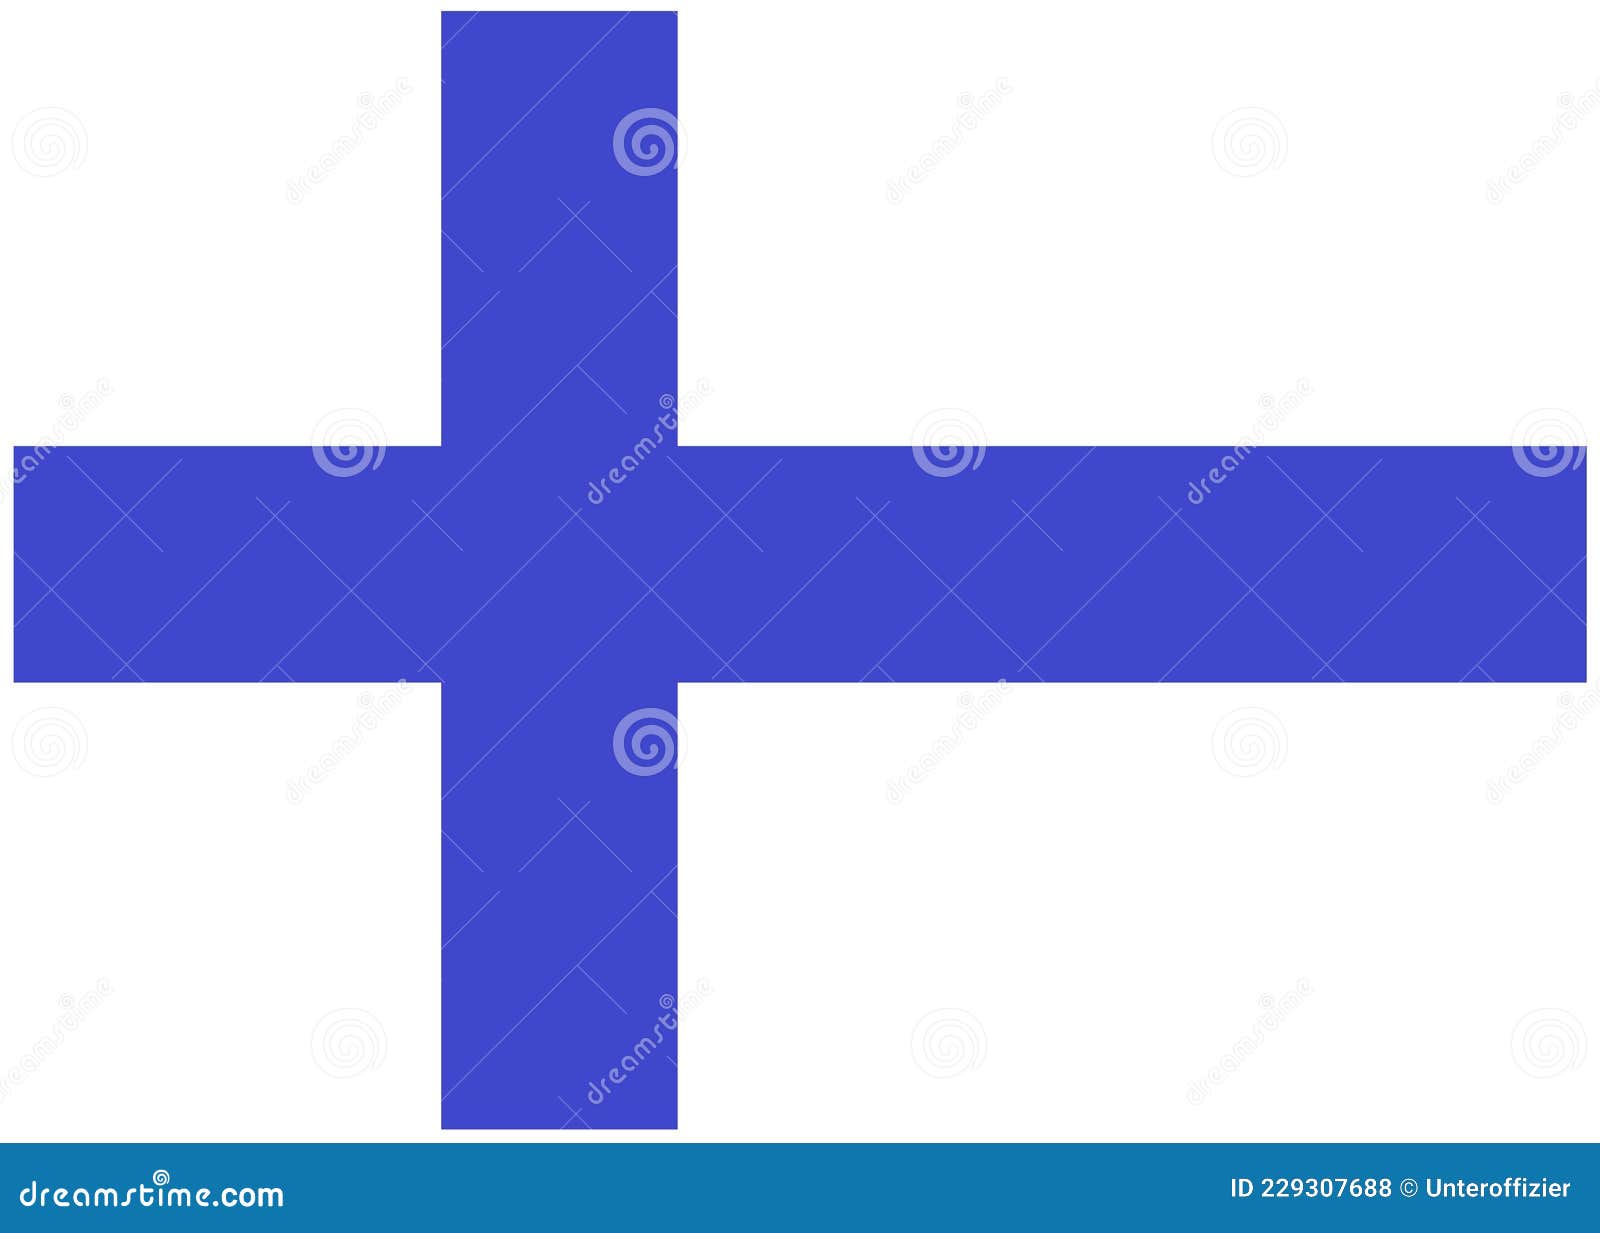 Cờ Phần Lan: Cờ Phần Lan mang trong mình nét đẹp giản dị và đặc trưng của đất nước Phần Lan. Với màu trắng tinh khôi và màu xanh lá cây, cờ này đại diện cho sự trong trẻo và sức sống của tự nhiên ở Phần Lan. Hãy chiêm ngưỡng cờ này để cảm nhận sự thanh bình và yên tĩnh của đất nước này.